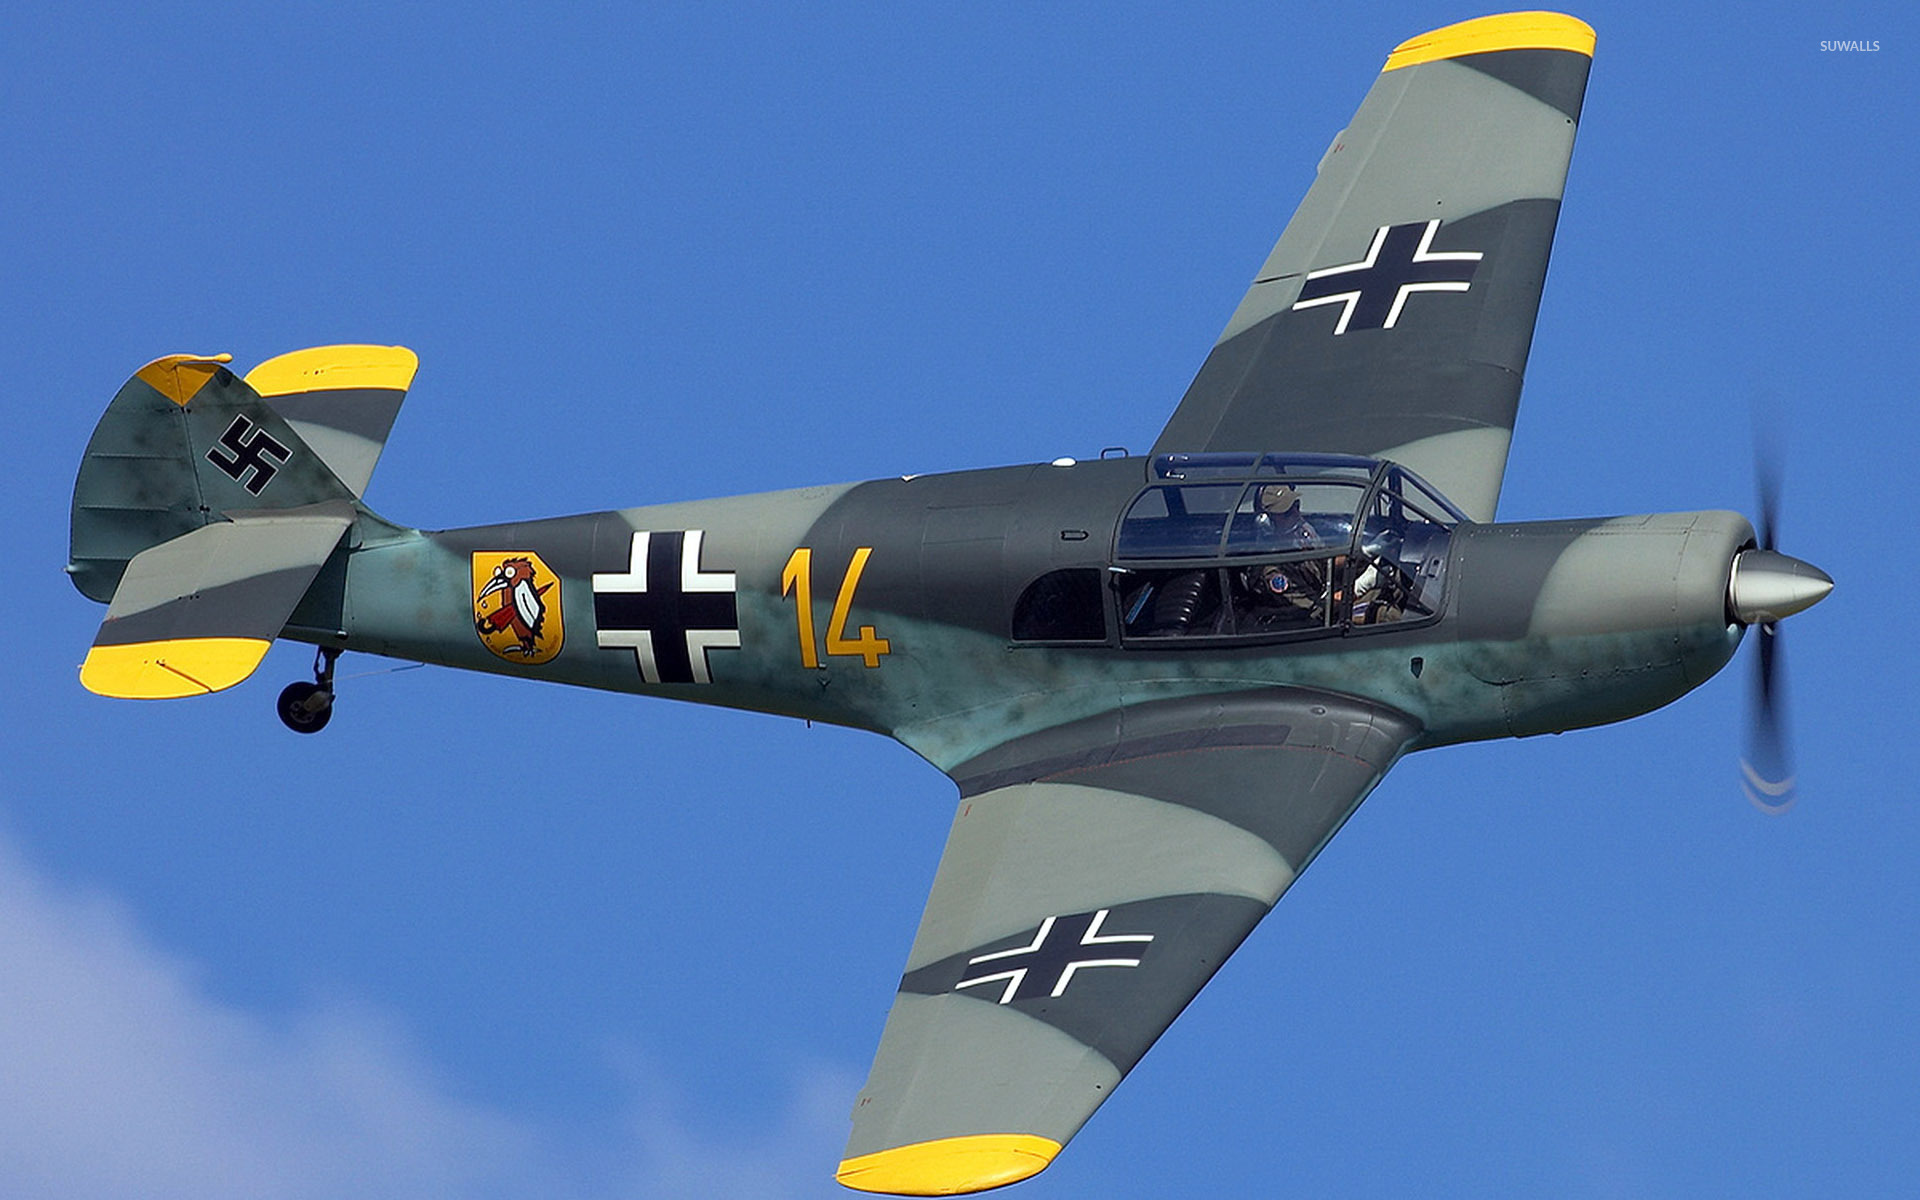 Messerschmitt Bf 108 Wallpaper - Me 108 , HD Wallpaper & Backgrounds